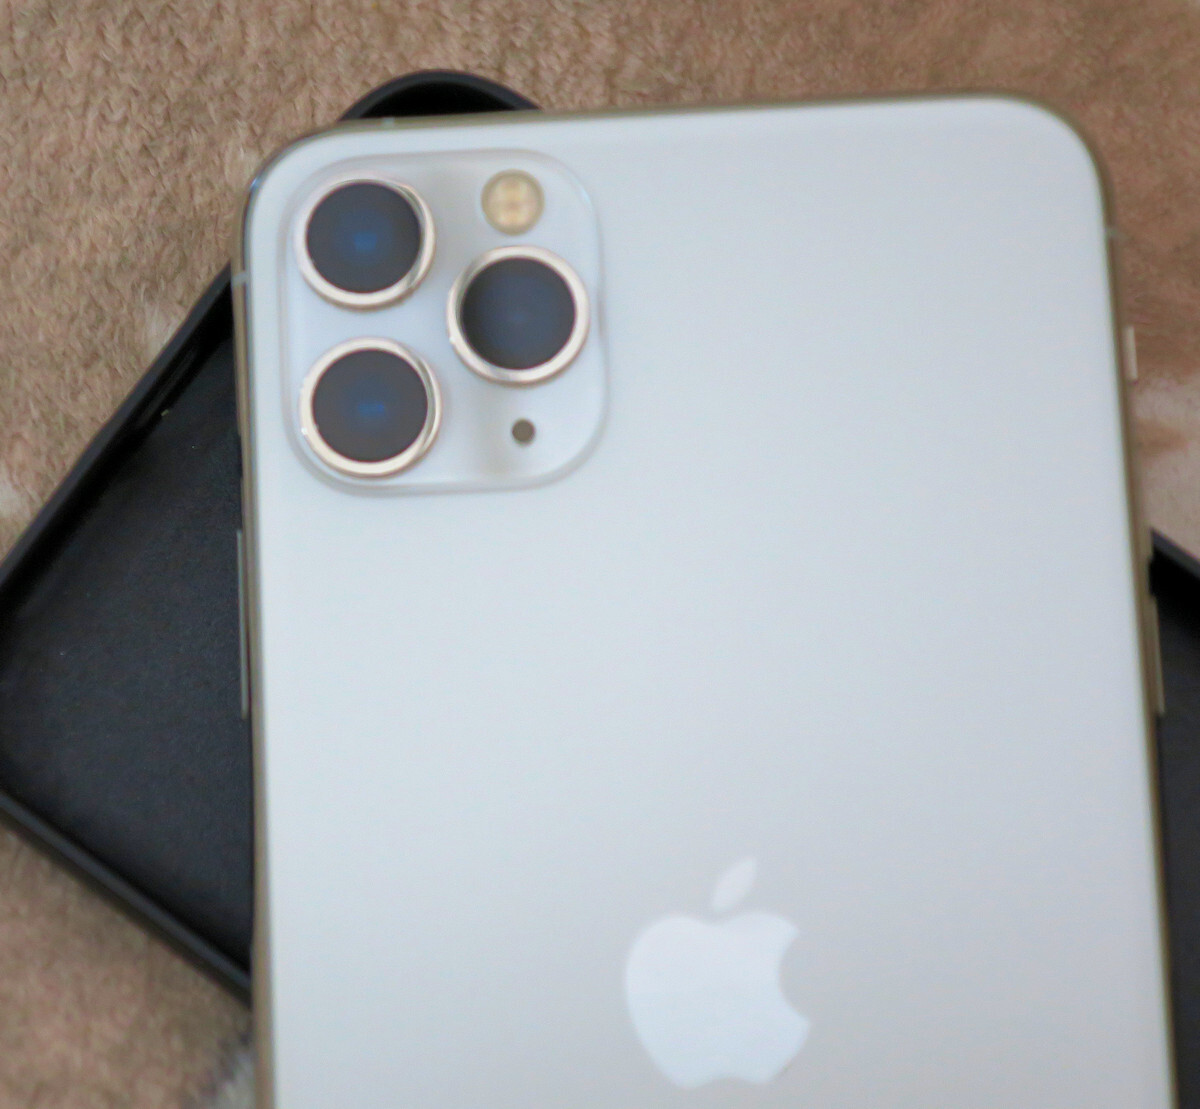 Apple iPhone 11 Pro Max серебряный 256GB аккумулятор 84%